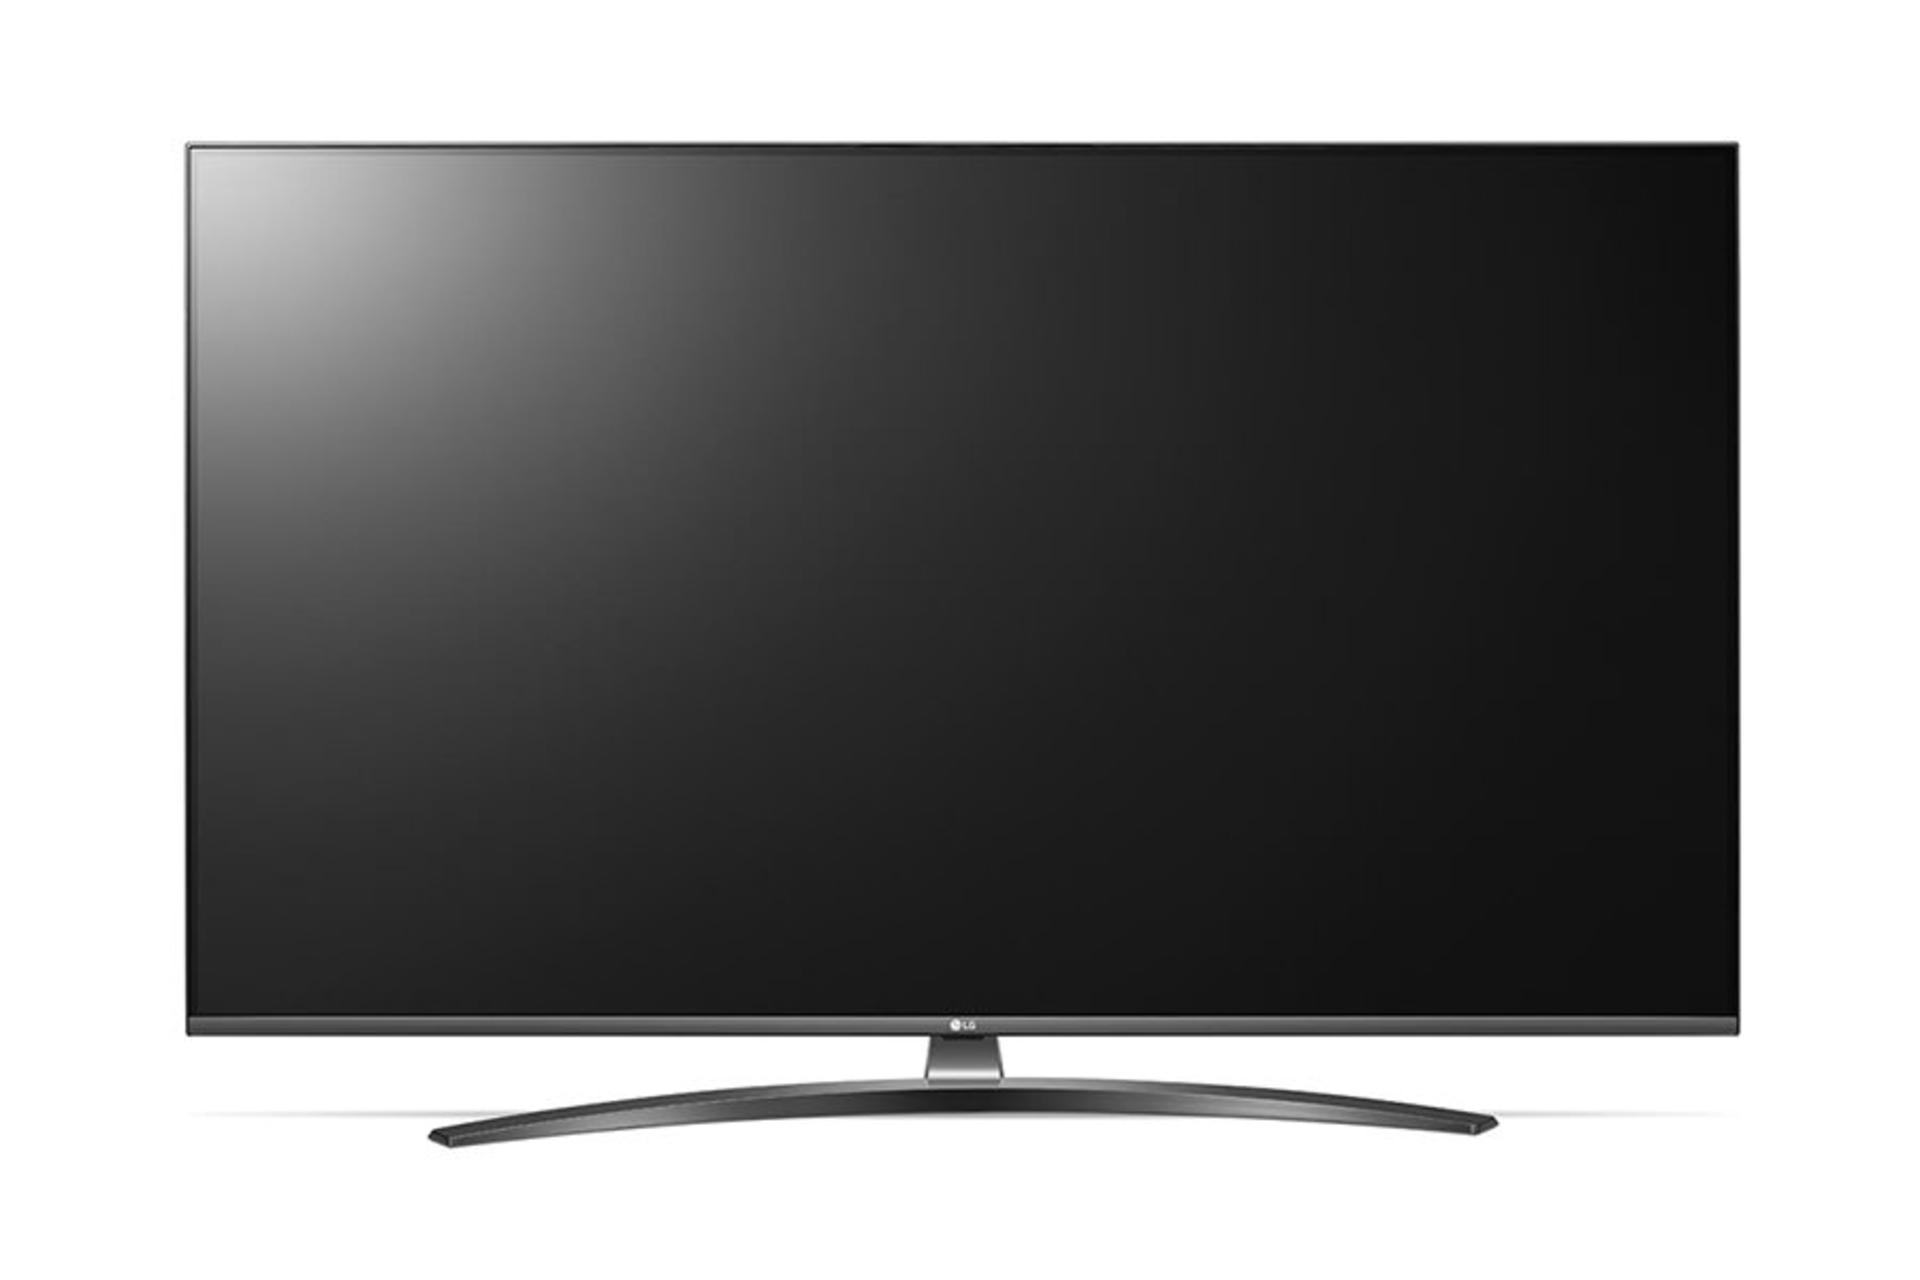 نمای جلو تلویزیون ال جی UM7660 مدل 55 اینچ با صفحه خاموش / LG 55UM7660